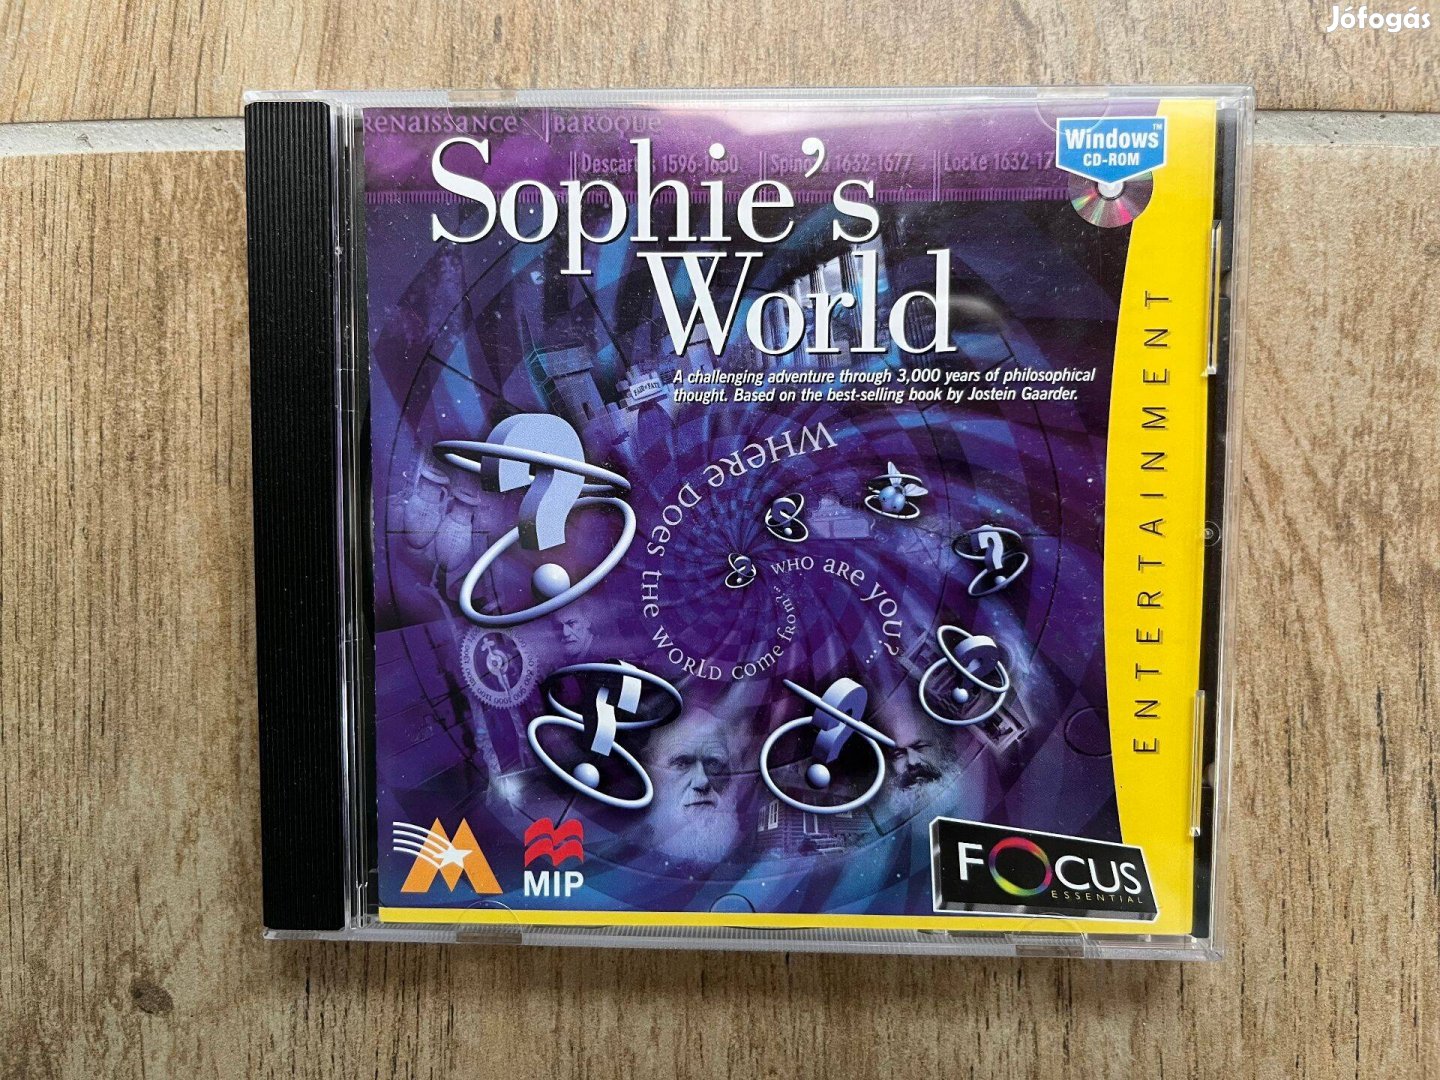 Sofie világa / Sophie's World PC játék (ritkaság) 1997. évi kiadással